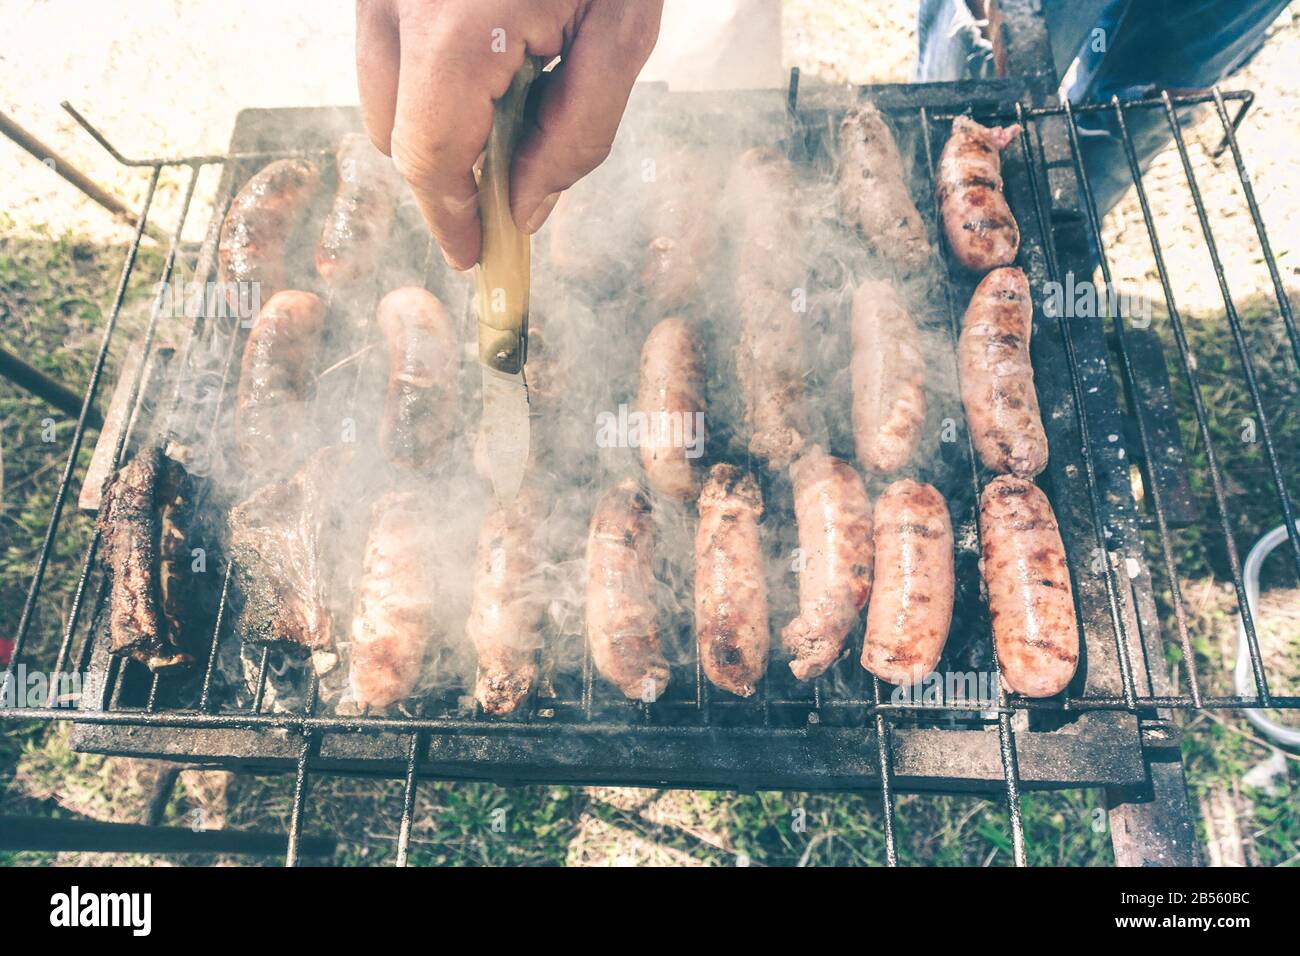 Junger Mann, der Fleisch auf dem Grill kocht - Chef, der einige Schweinefleischwürste im Freien im Park auf den Grill legt - Konzept des Essens von bbq im Freien während der Sommerzeit - Sof Stockfoto